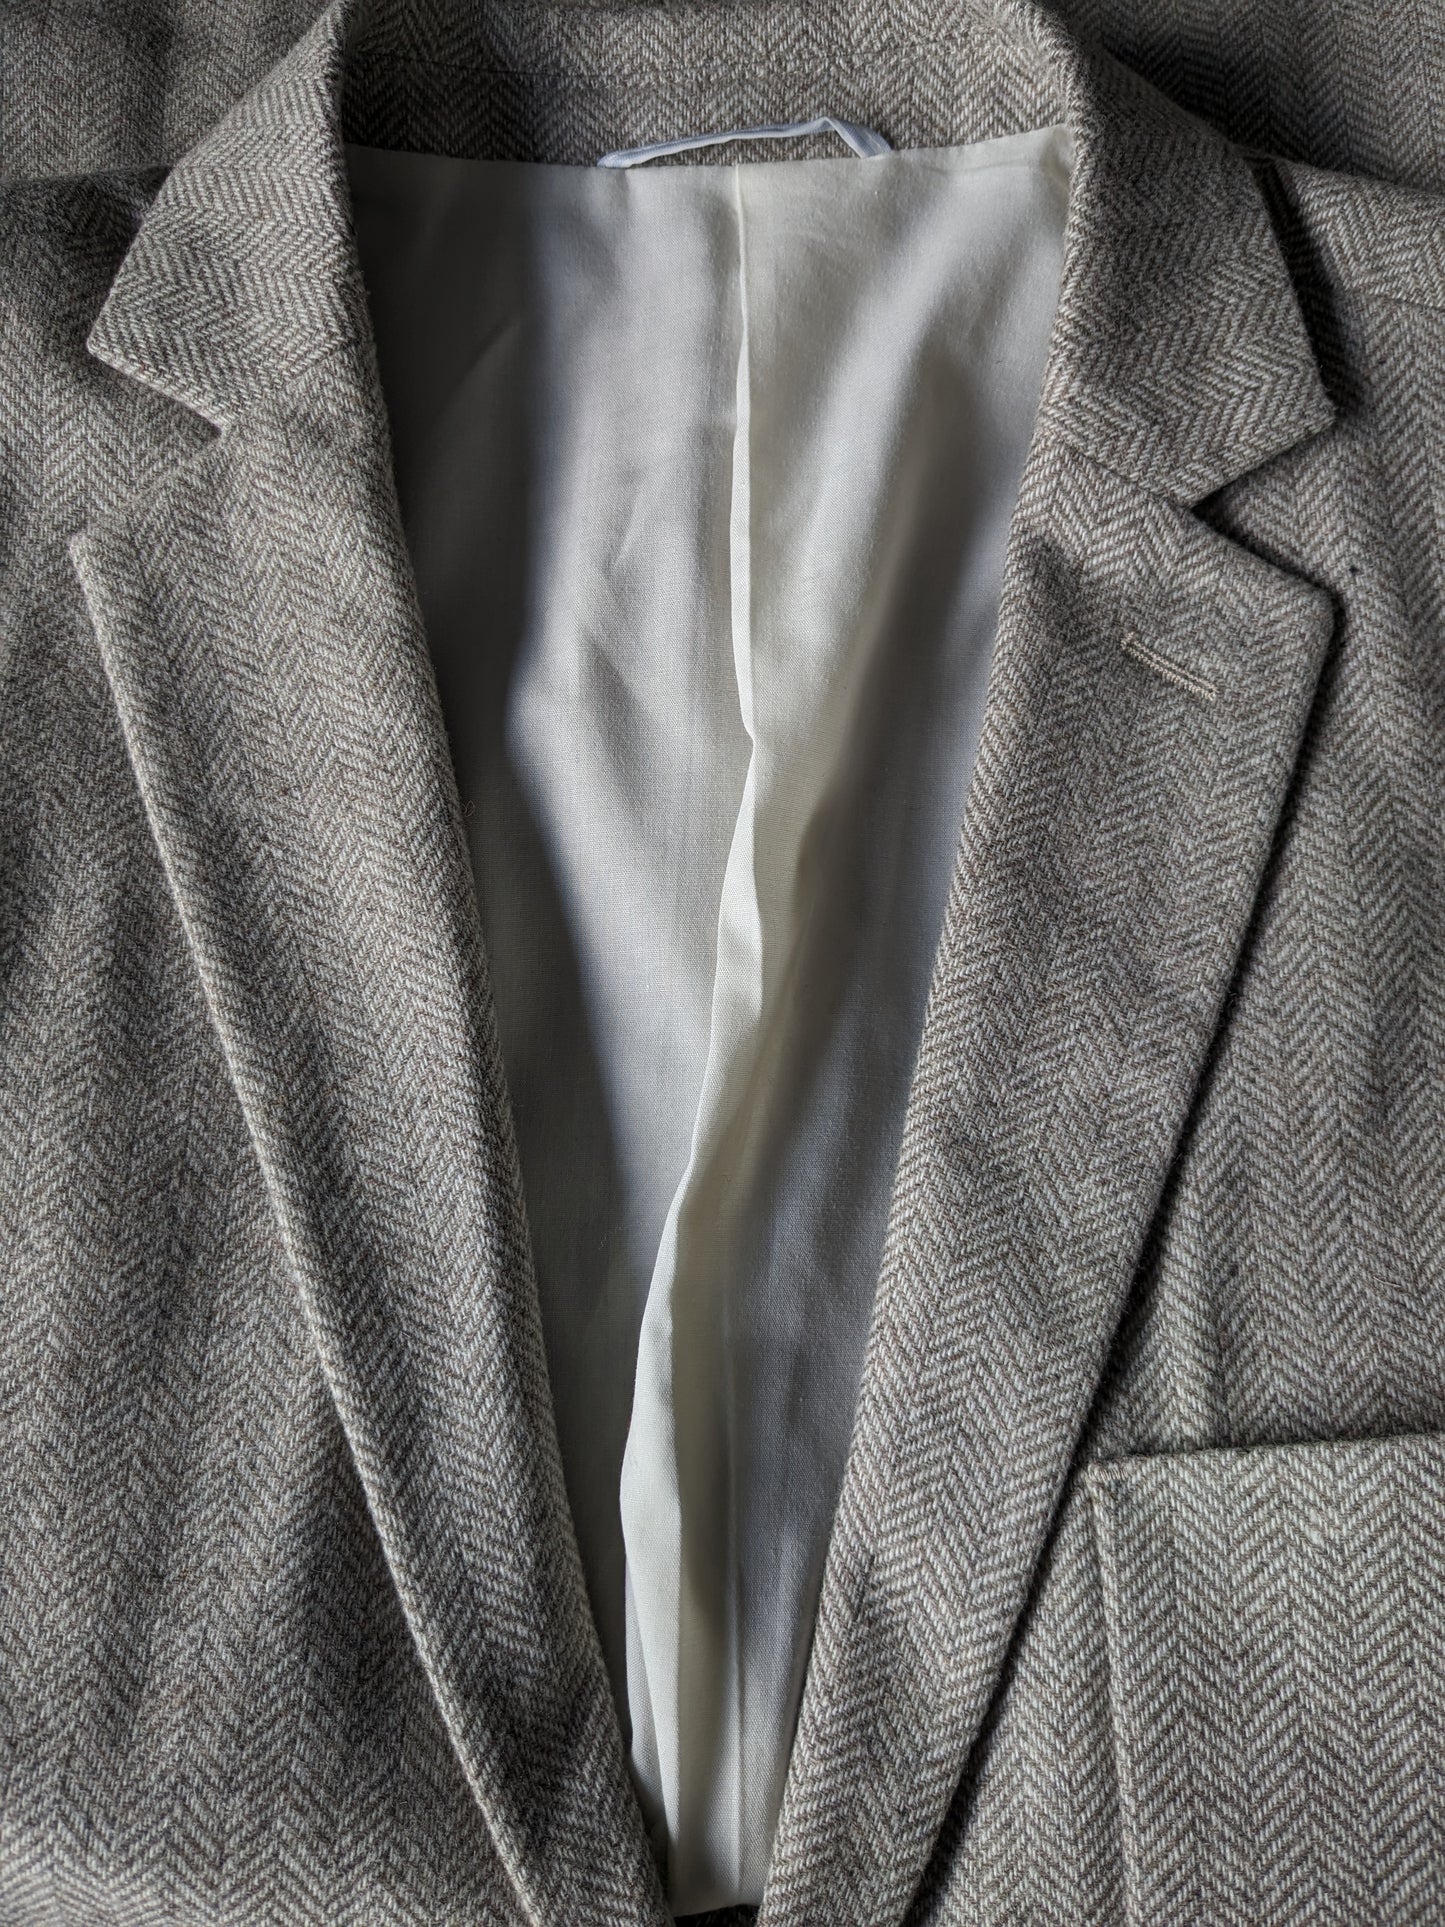 Veste en laine Homme sélectionnée. Motif à chevrons brun beige. Taille 50 / M. 40% de laine.